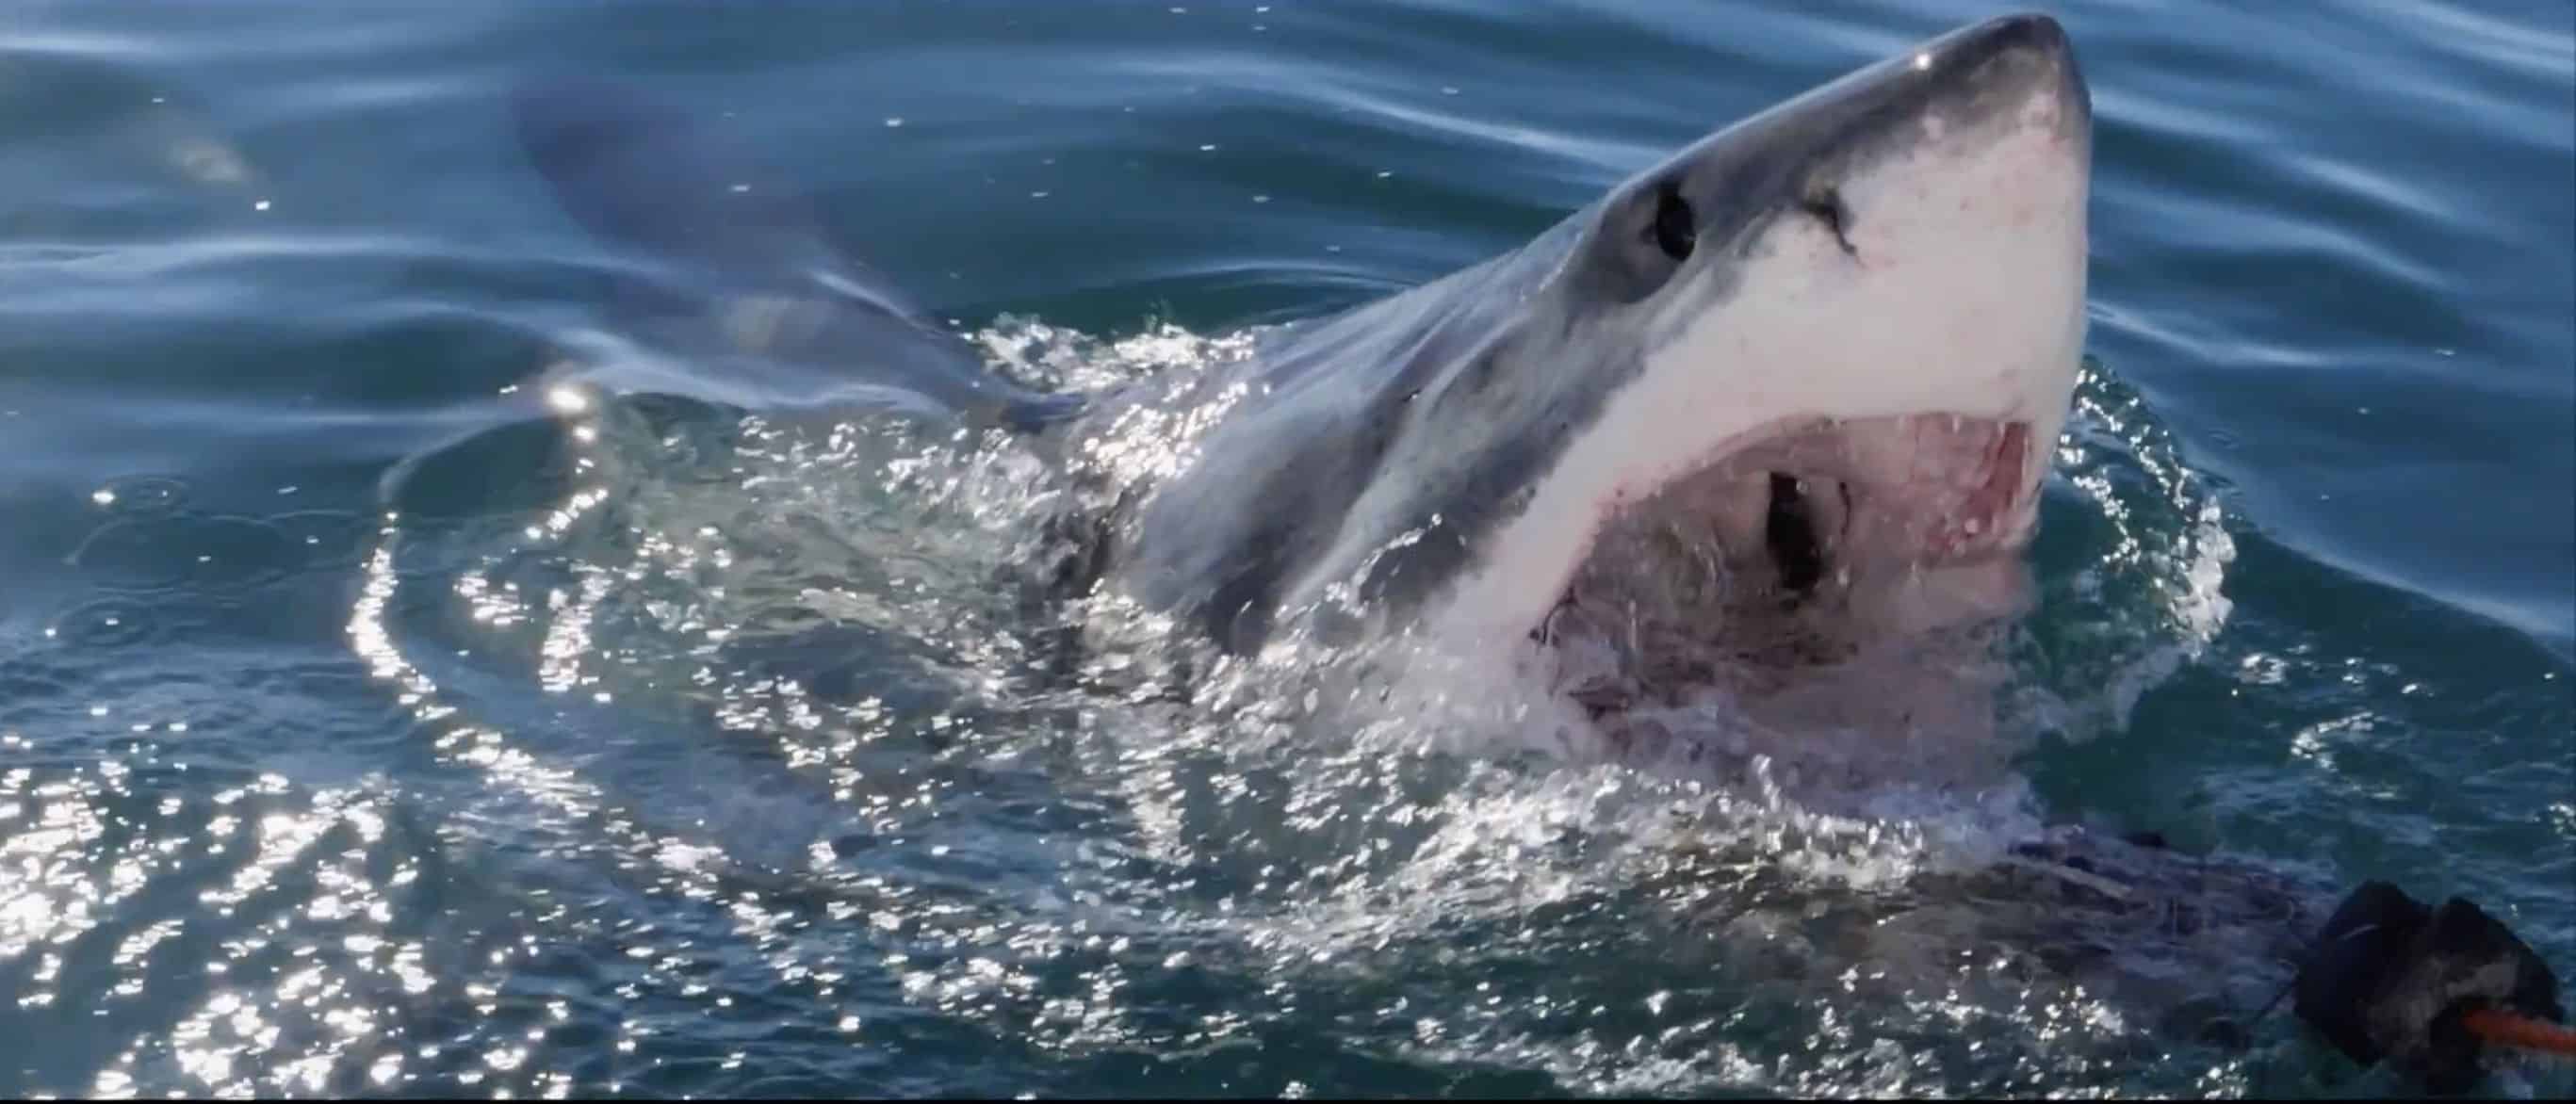 Spectaculaire video - grote witte haai vliegt door de lucht